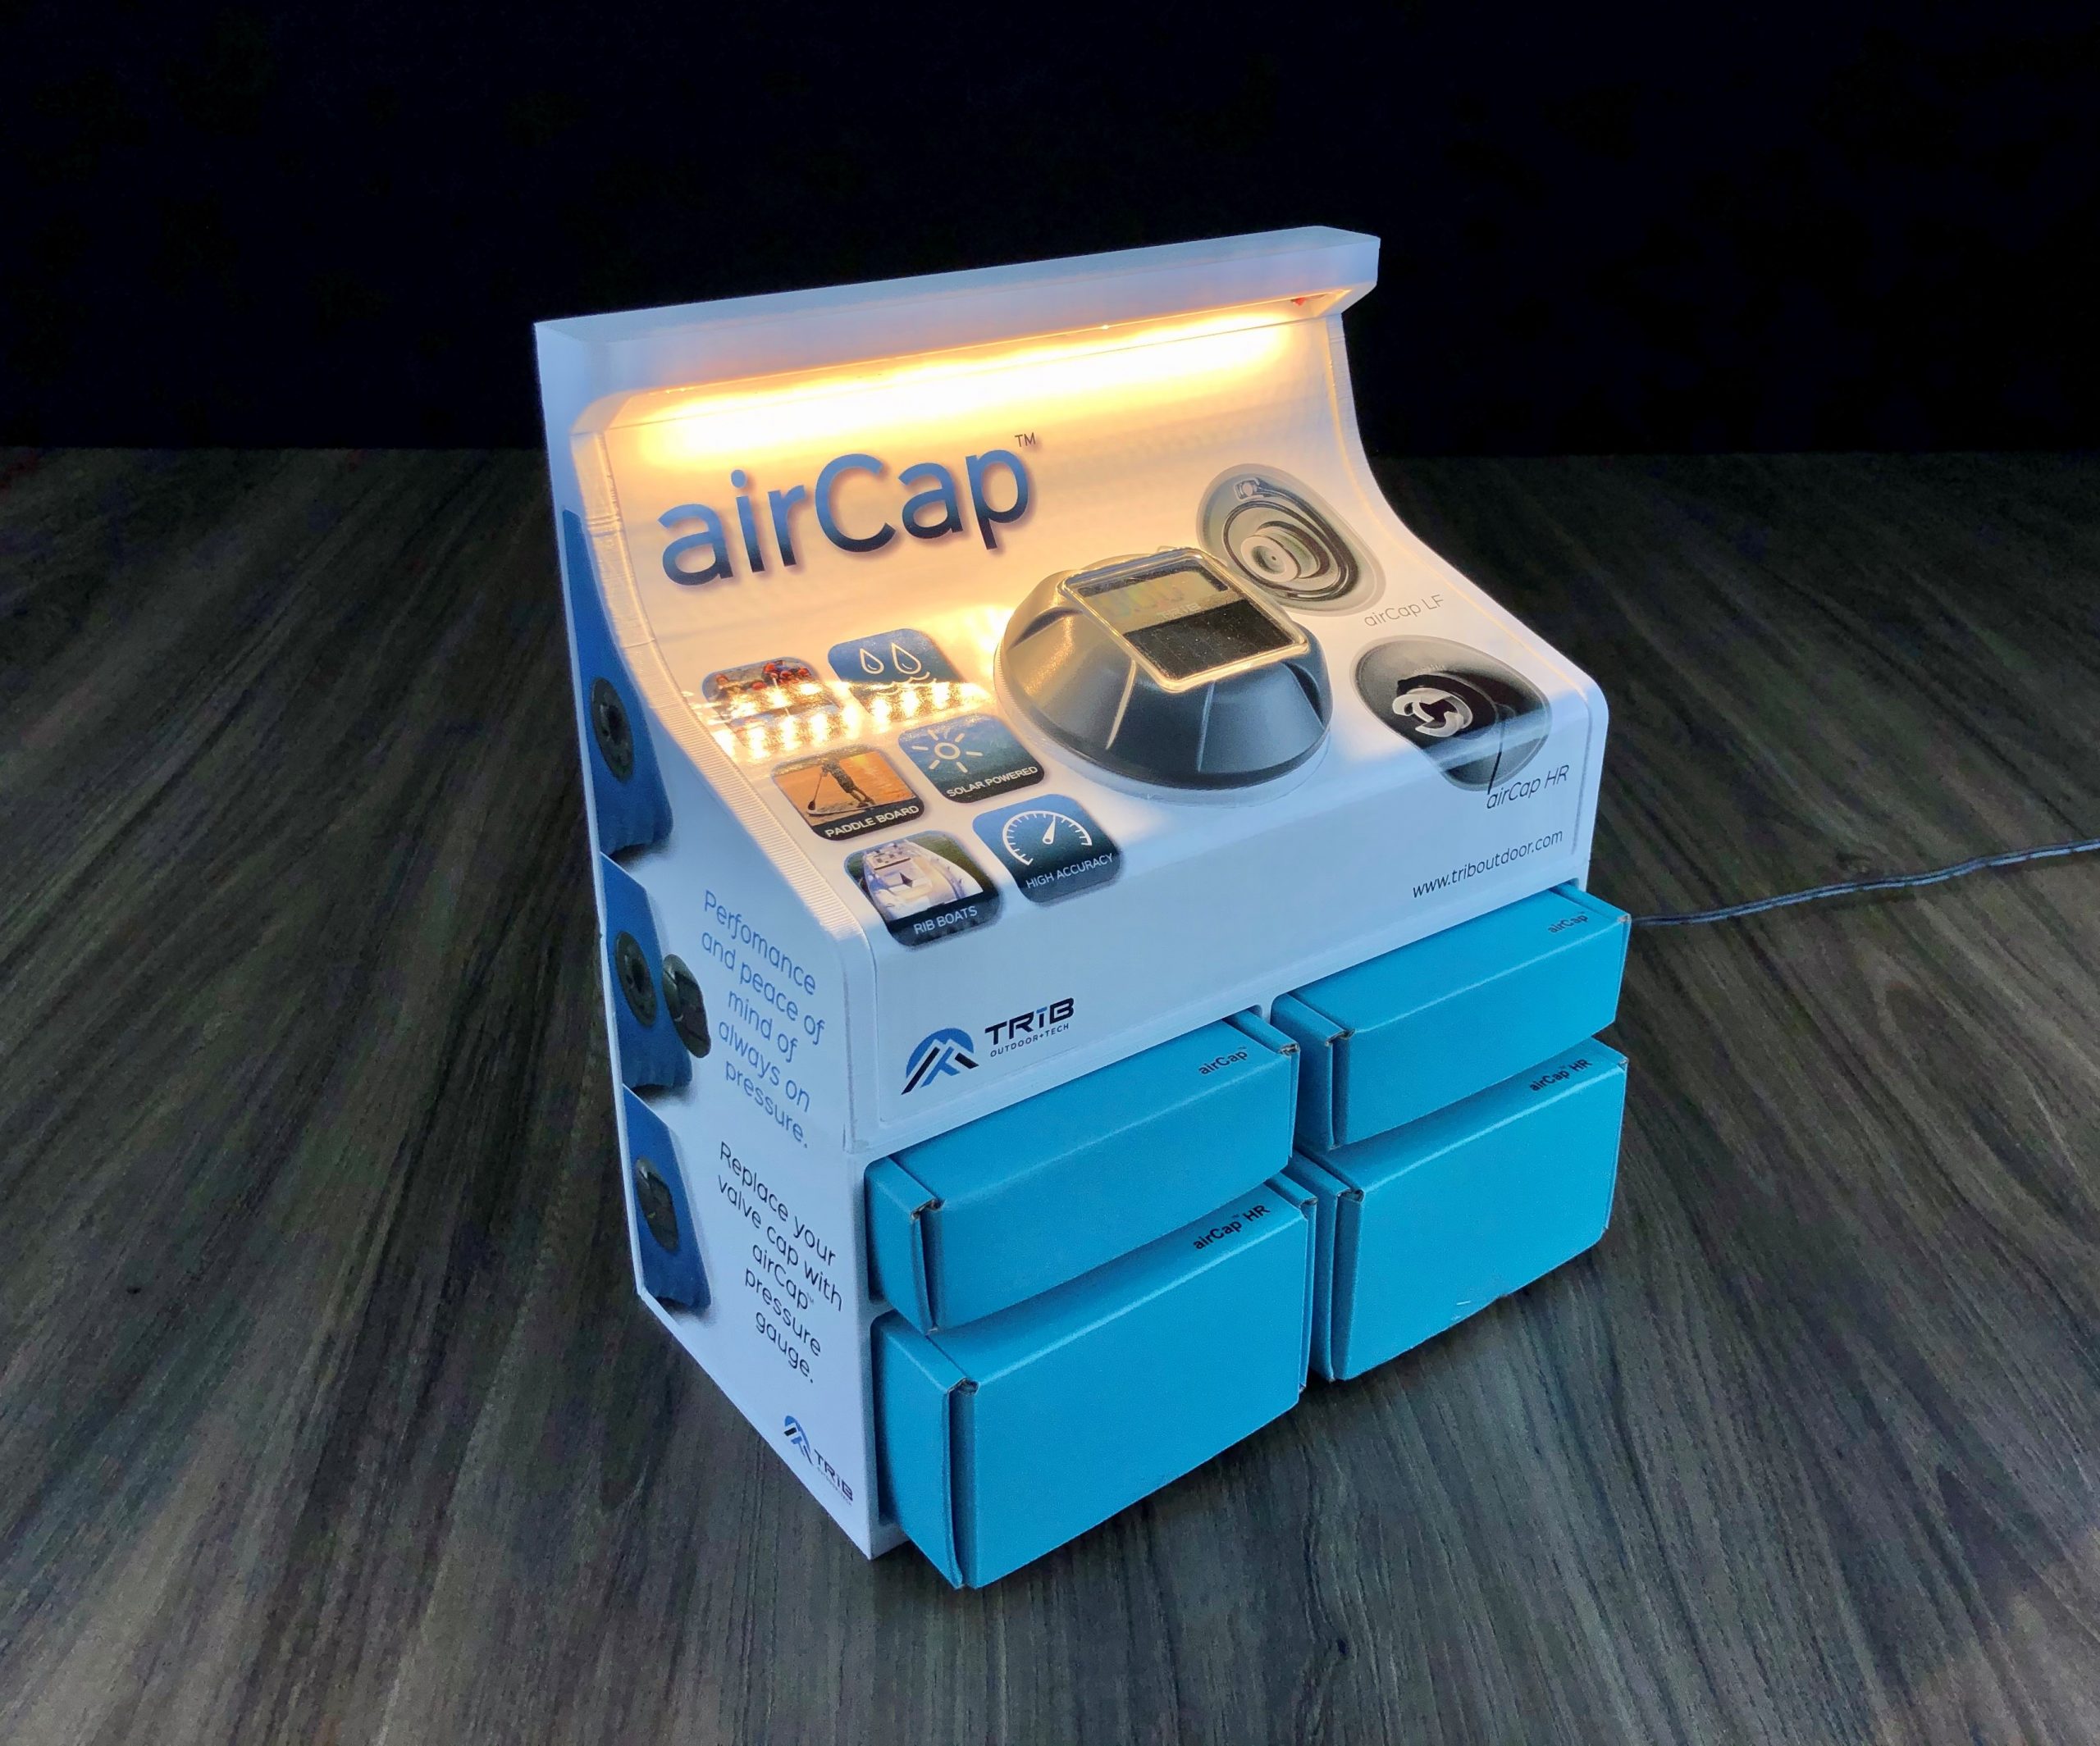 Aircap